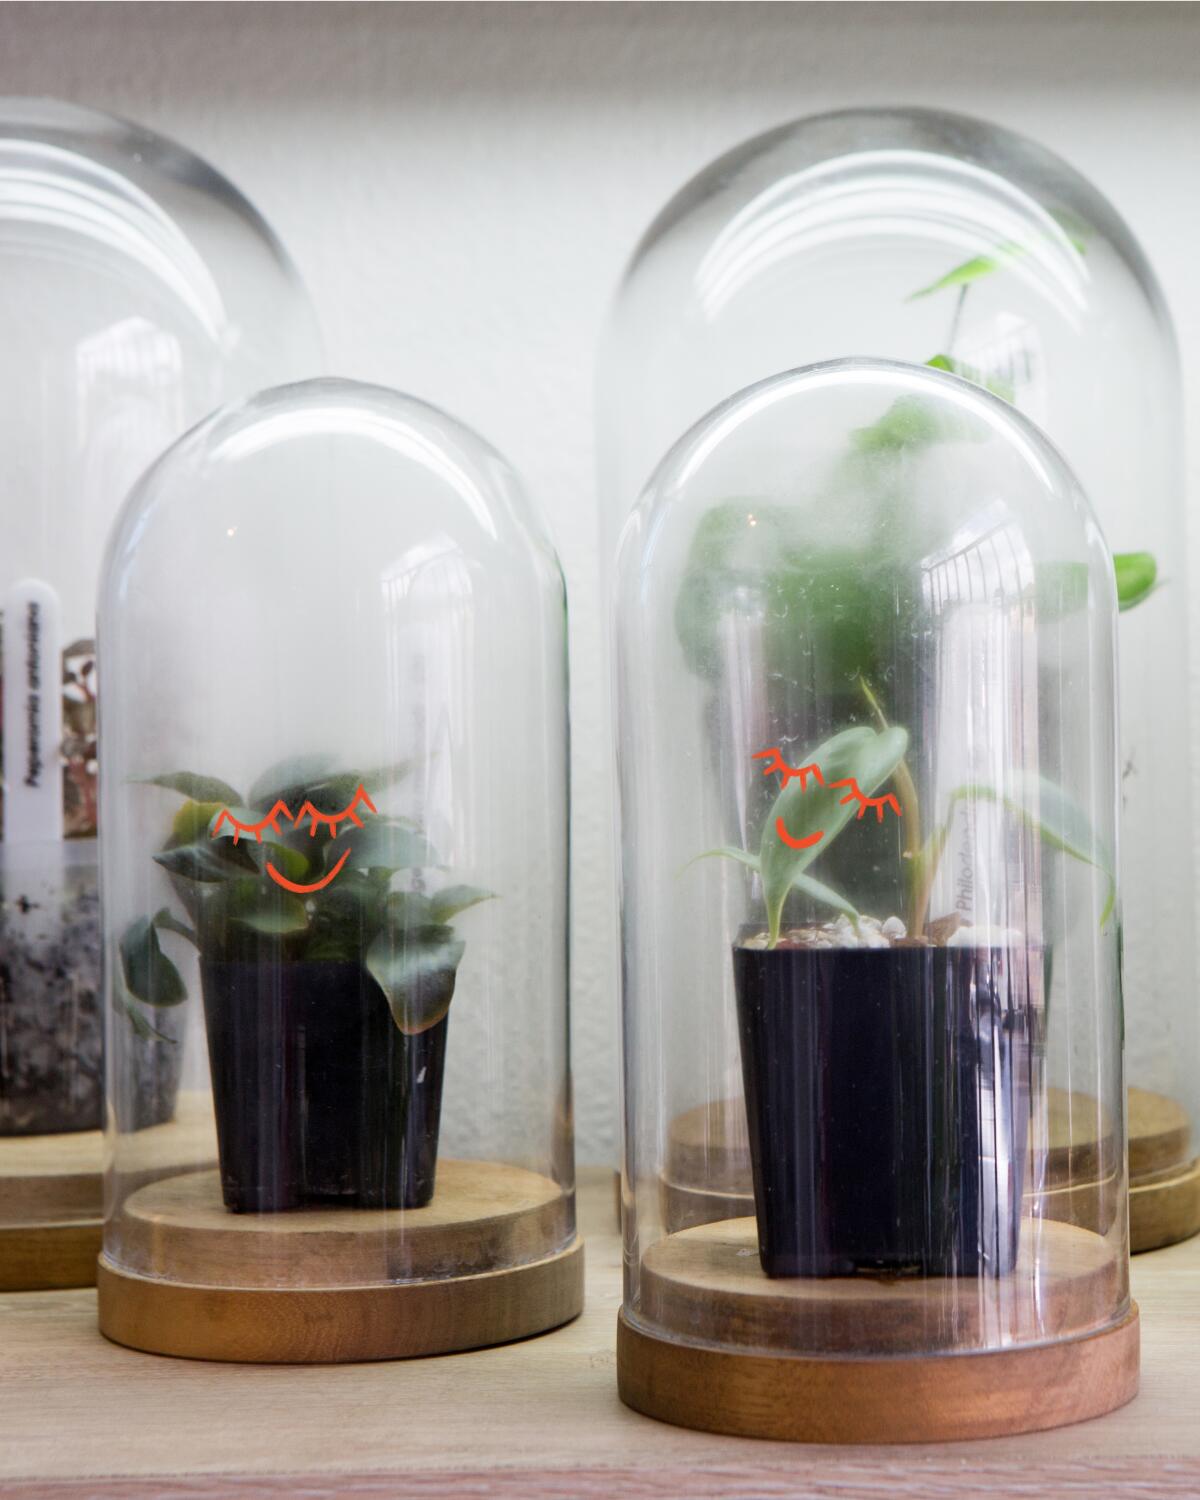 Plants in bell jars